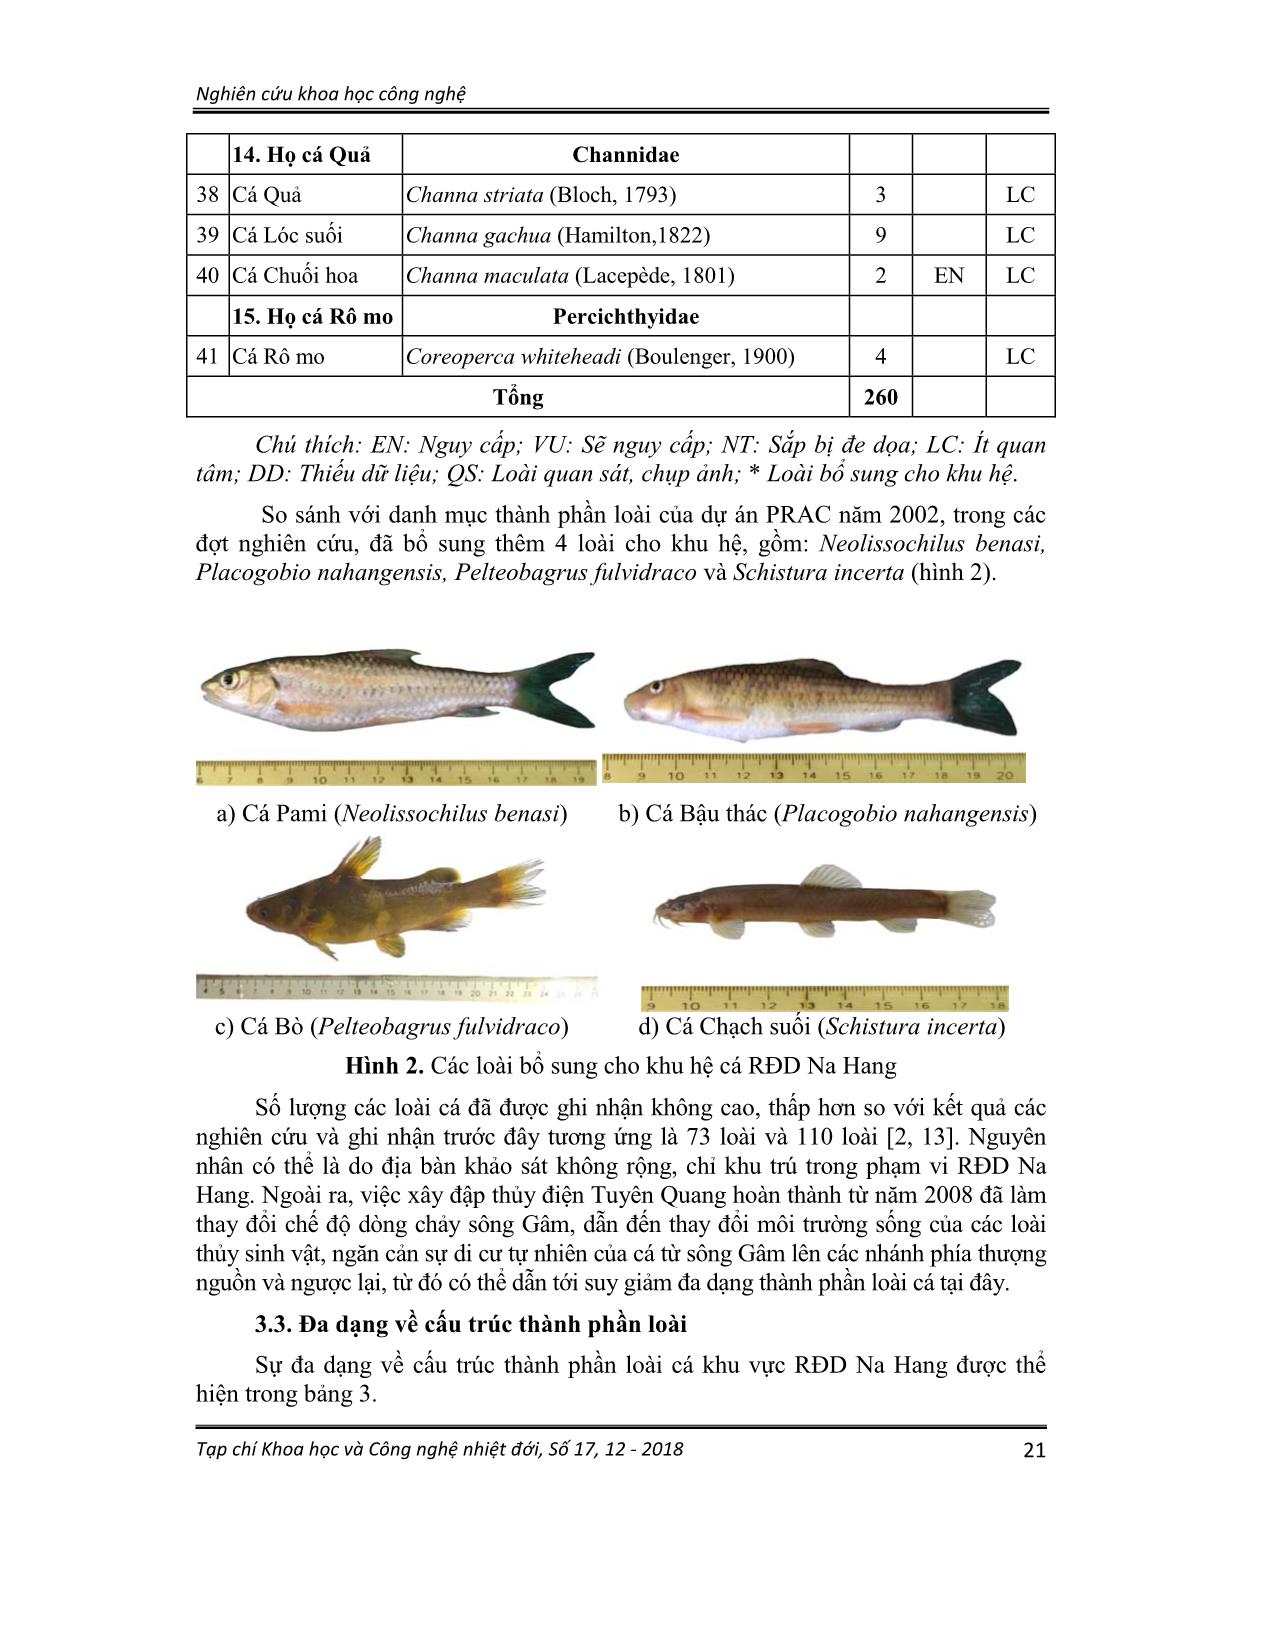 Thành phần loài và phân bố của cá trong các thủy vực rừng đặc dụng Na hang, tỉnh Tuyên Quang trang 6